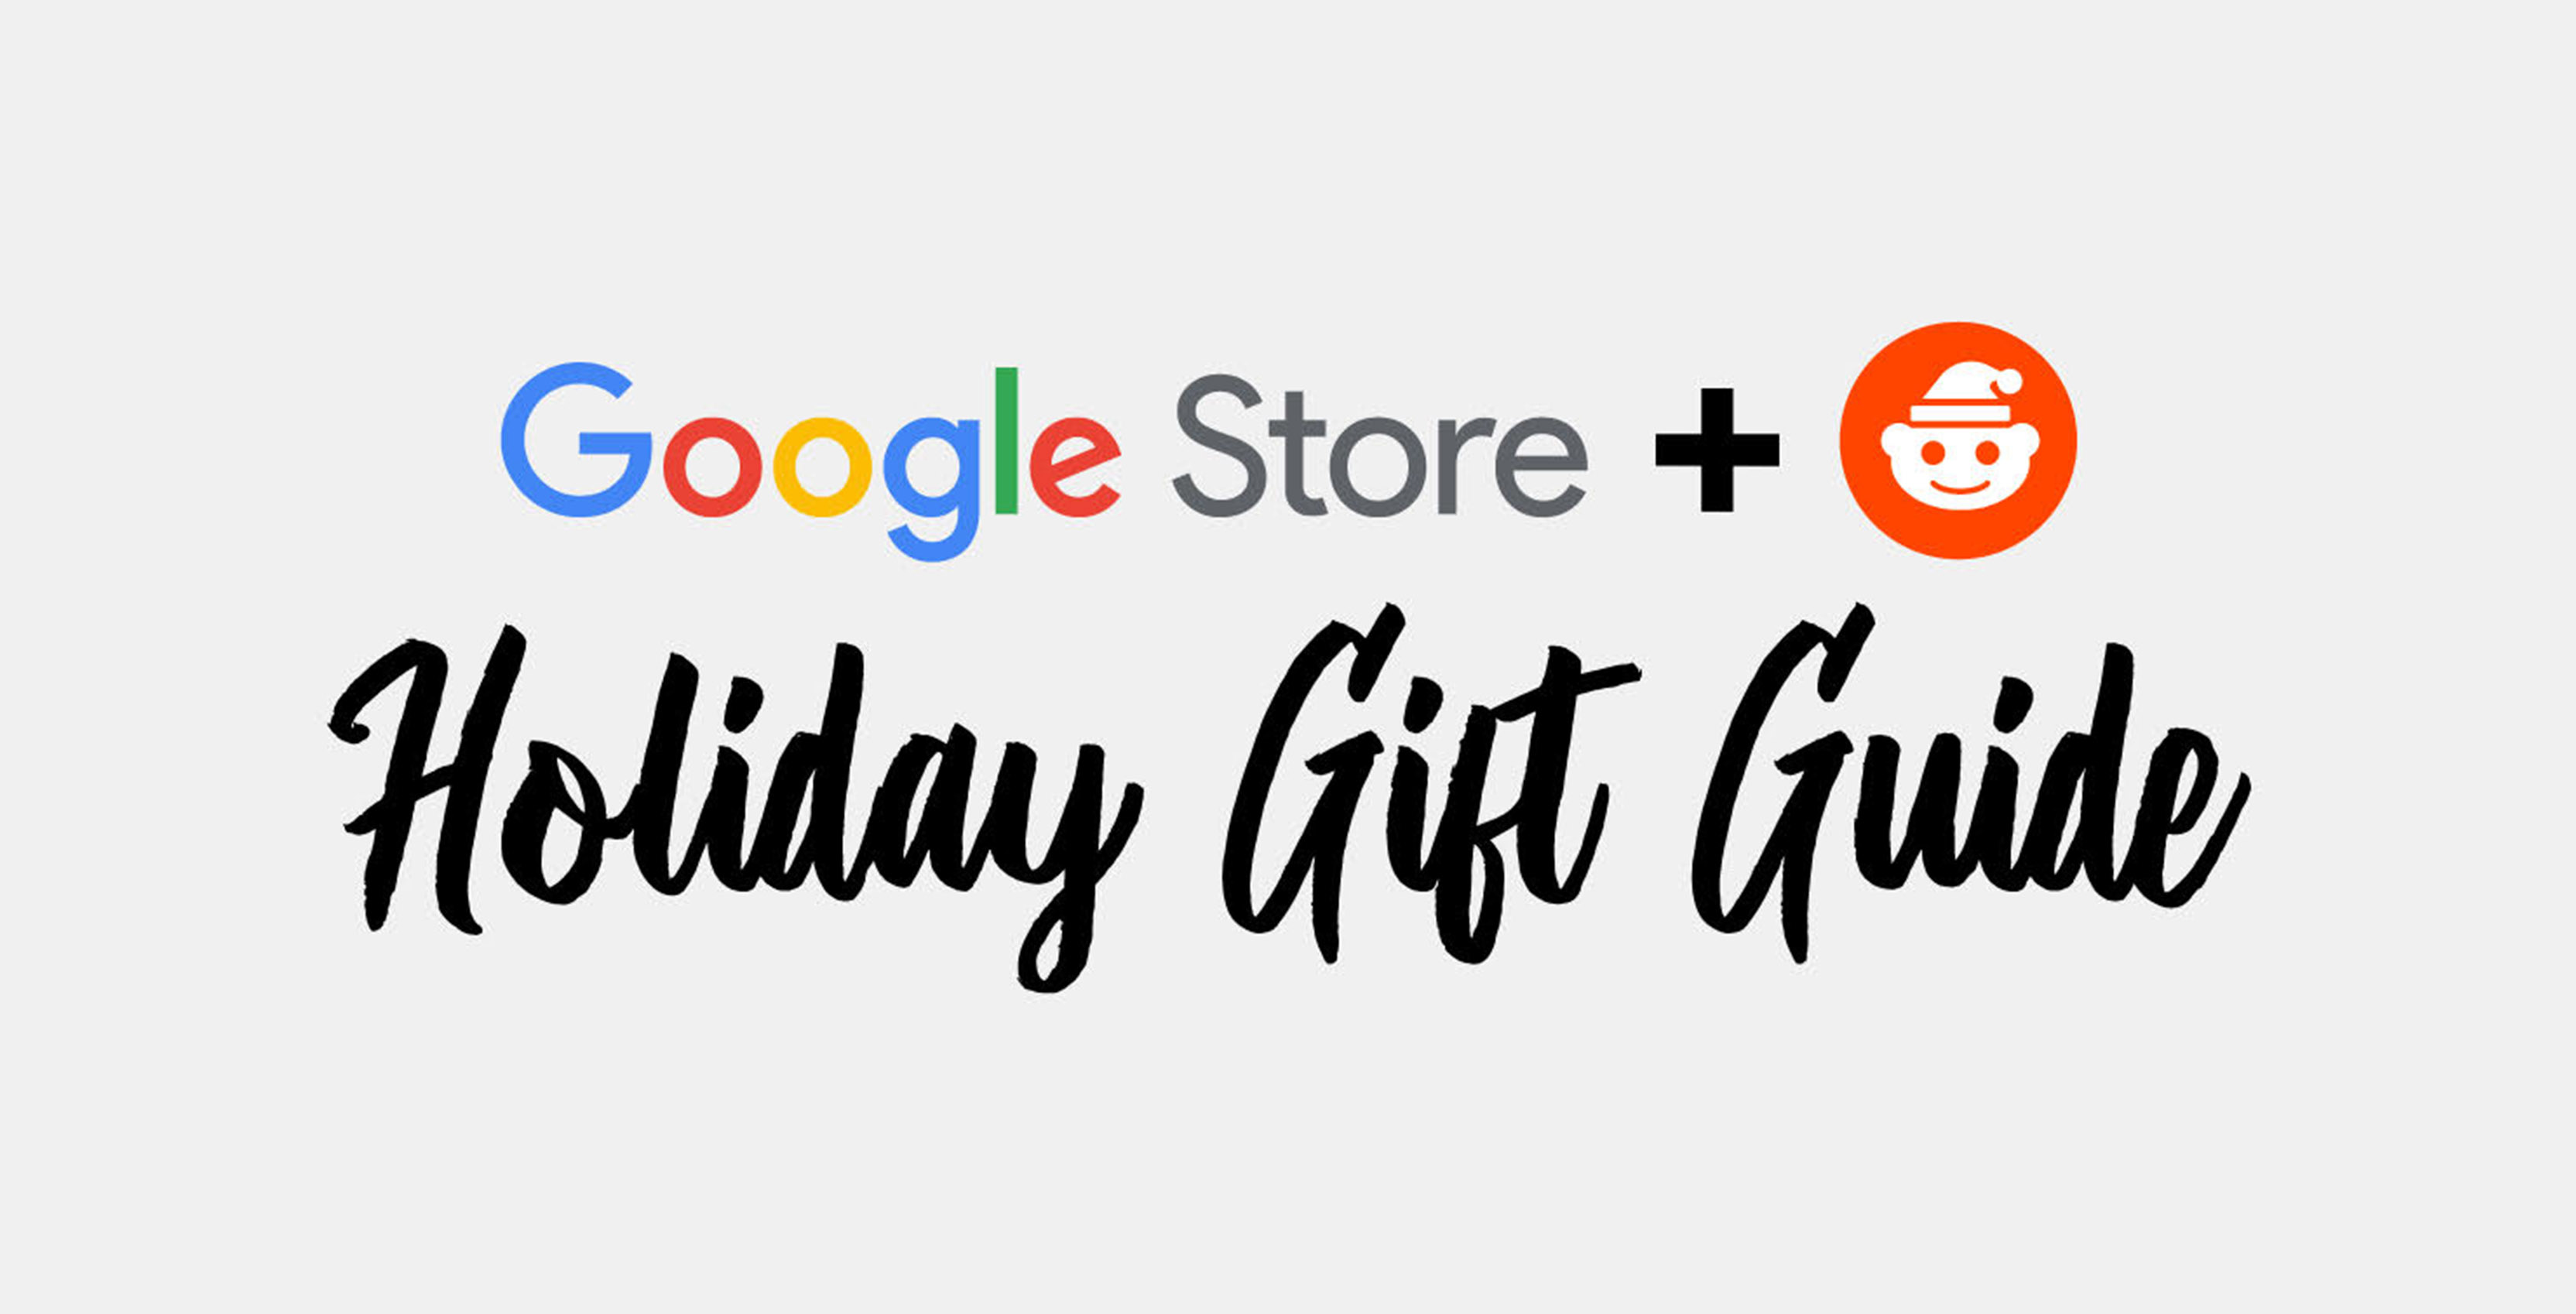 Google and Reddit 2018 Secret Santa Gift Exchange